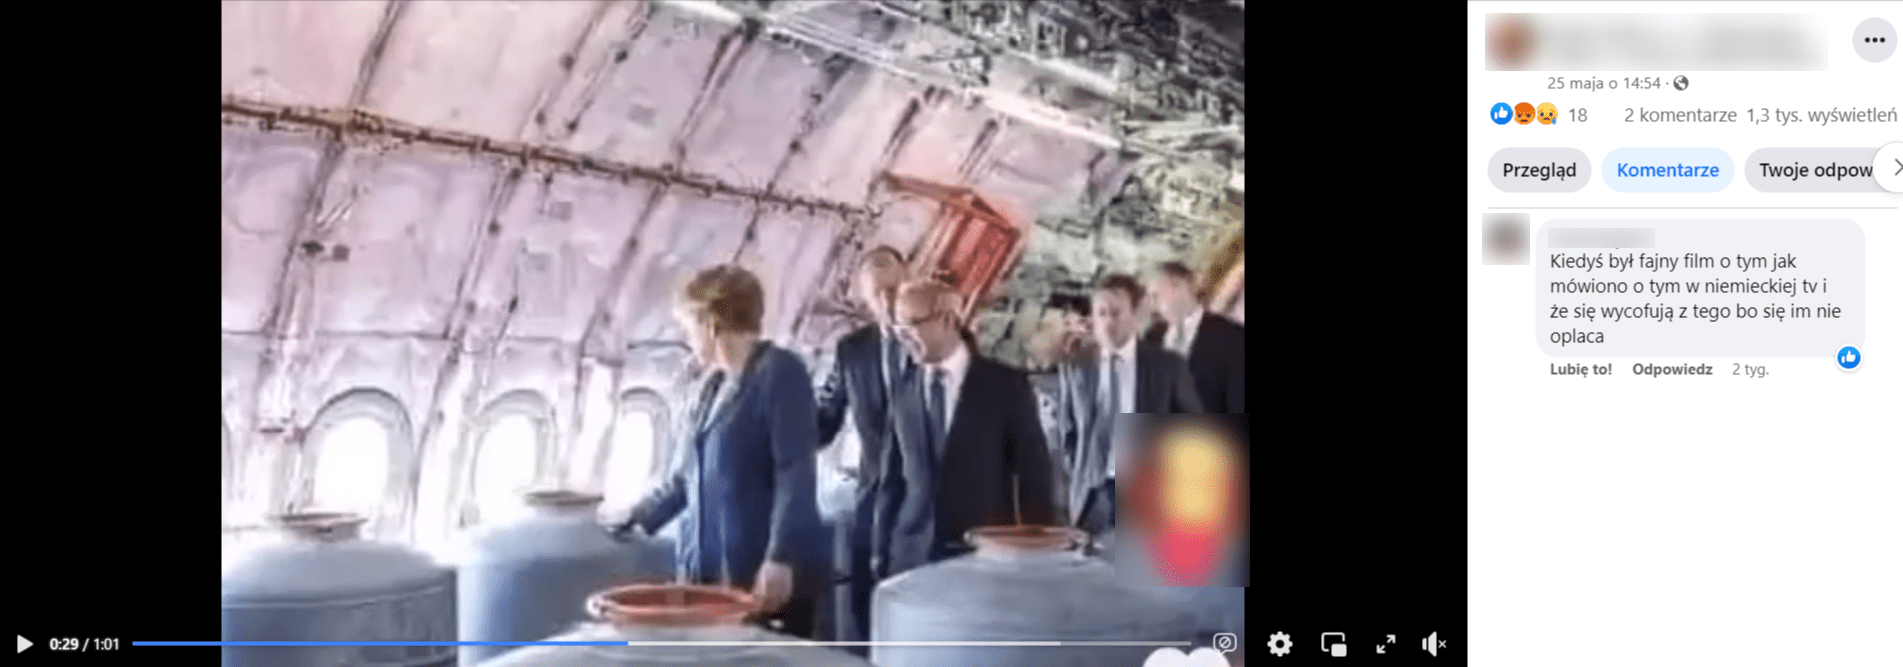 Zrzut ekranu wpisu na Facebooku. Na klatce nagrania widać zdjęcie z Angelą Merkel w towarzystwie innych osób we wnętrzu samolotu.